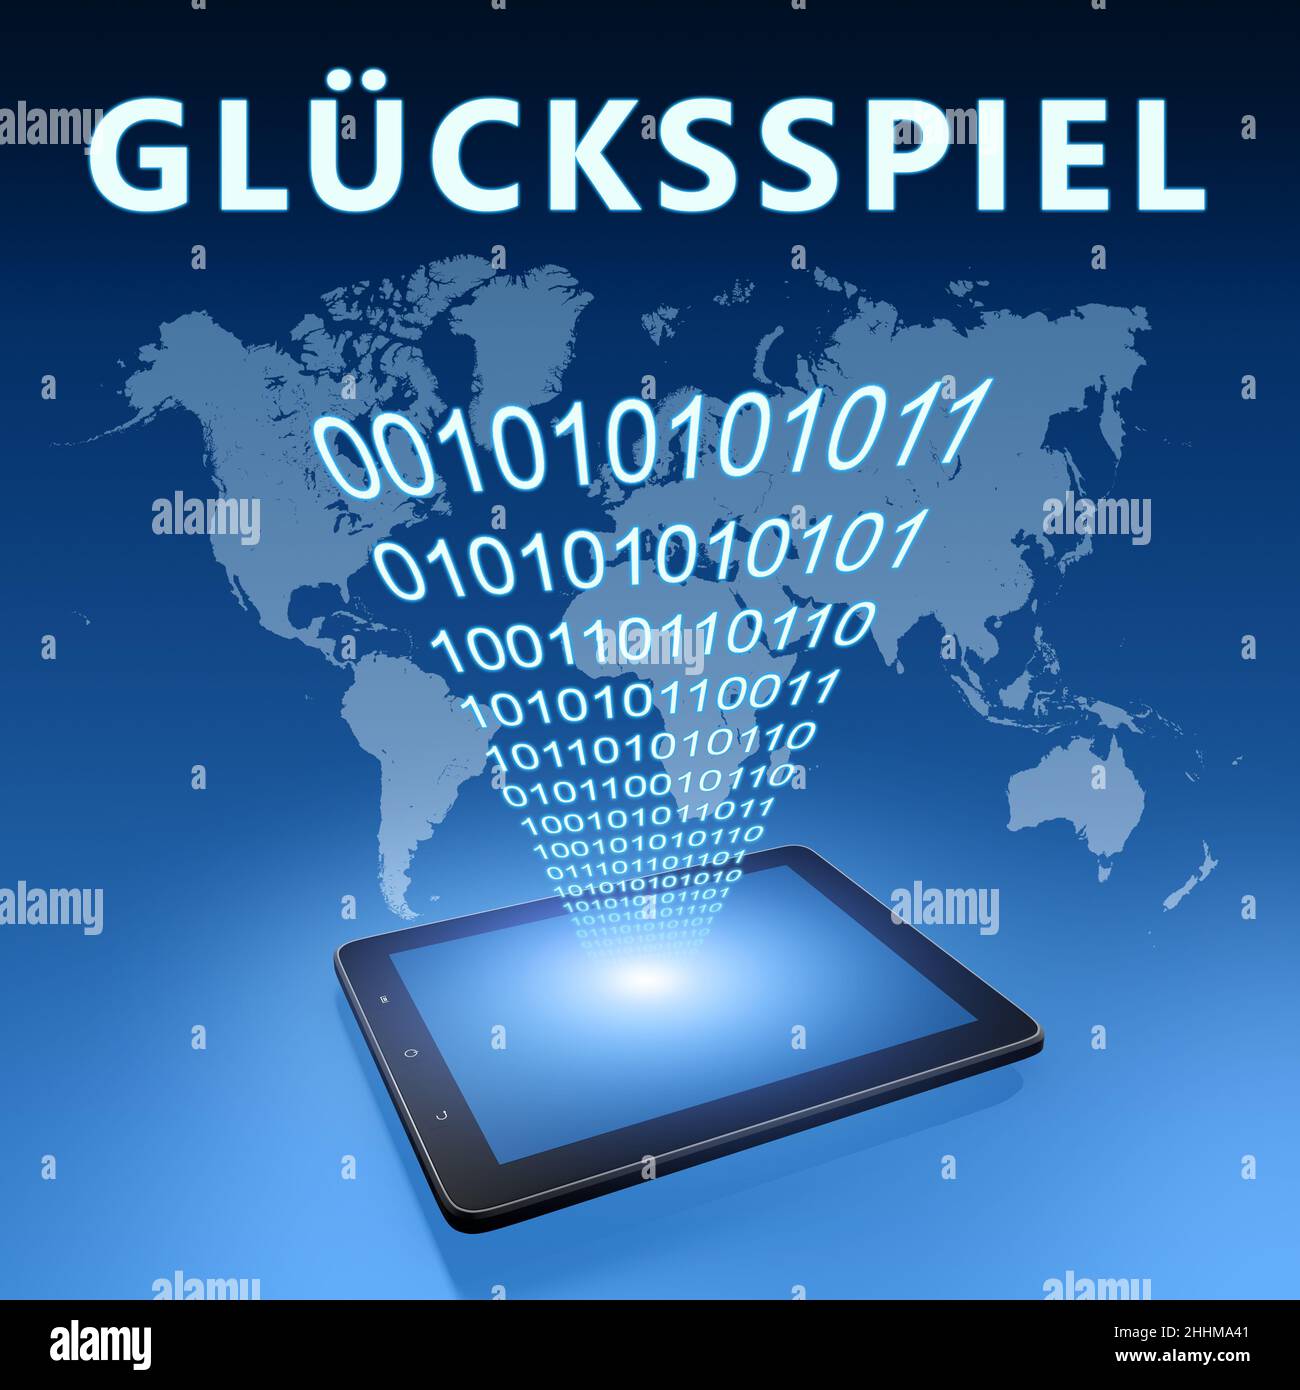 Gluecksspiel - parola tedesca per il gioco d'azzardo o il gioco d'azzardo - testo concetto con computer tablet su sfondo blu mappa wolld - 3D rappresentazione illustrazione. Foto Stock